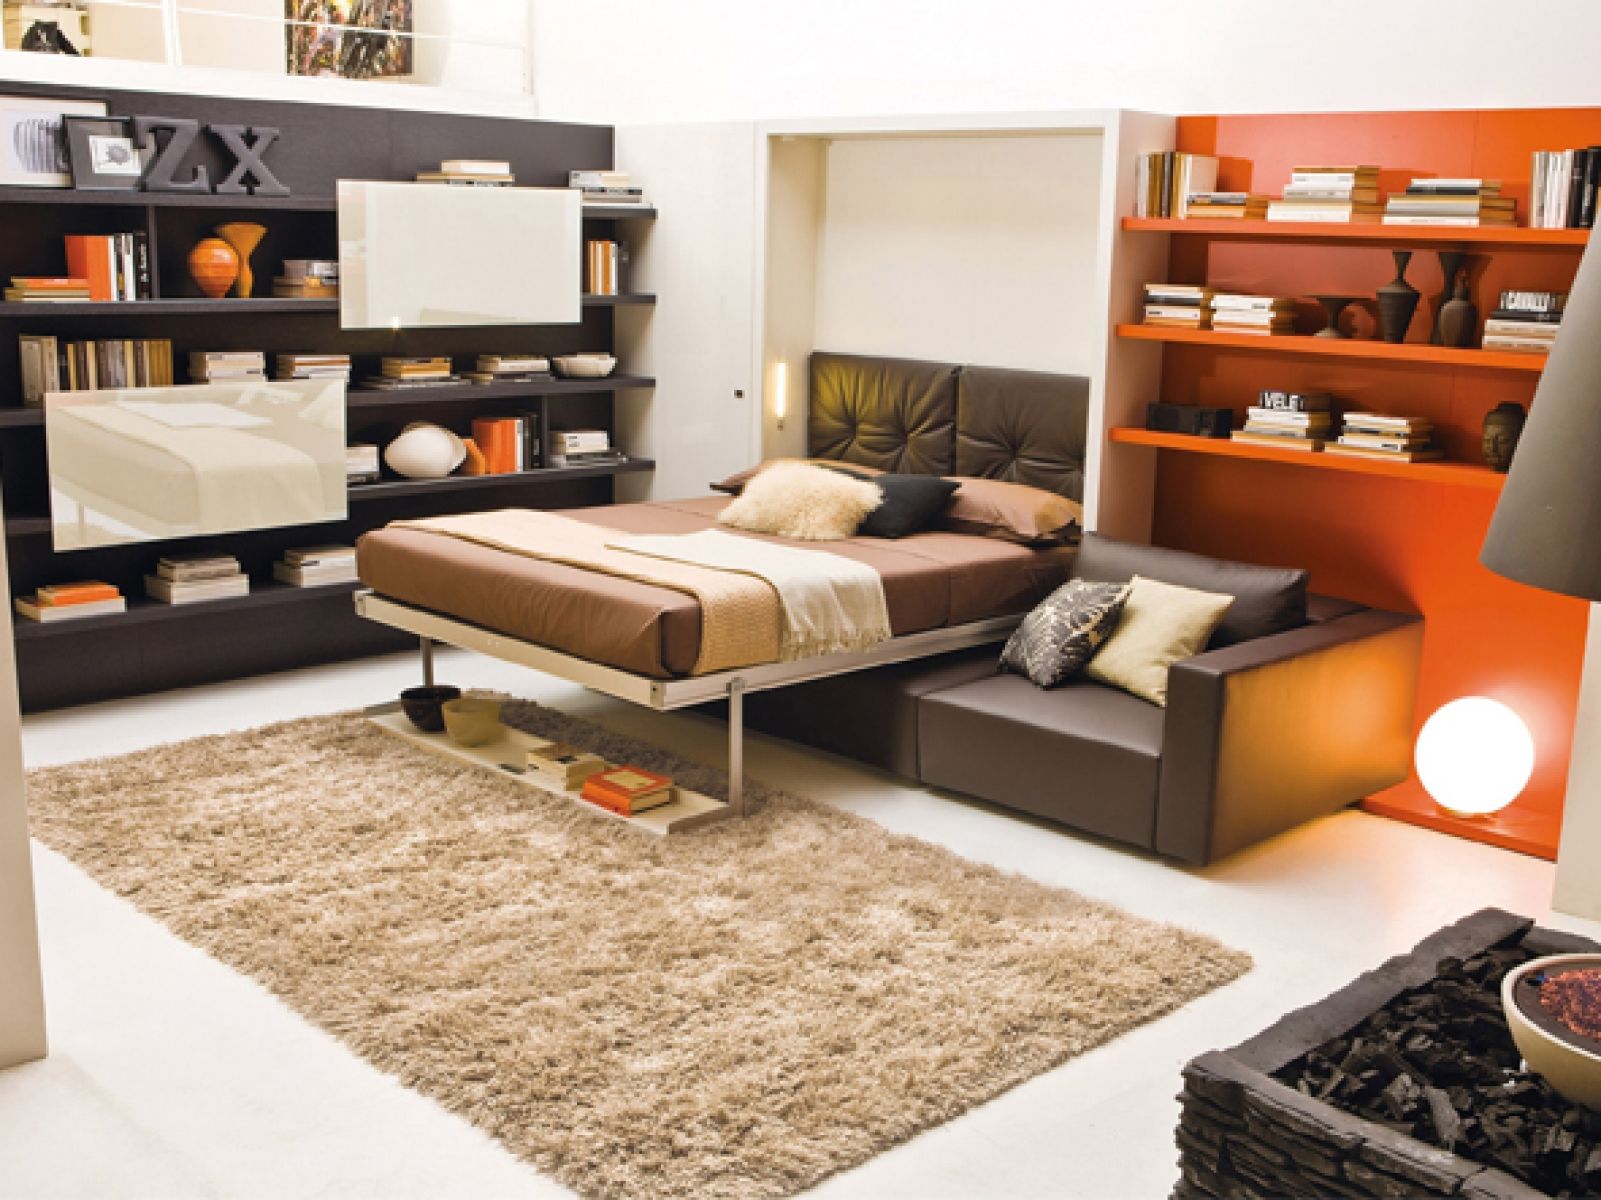 Giường tầng kết hợp tủ lưu trữ đang ngày càng trở nên phổ biến trong các không gian nhỏ